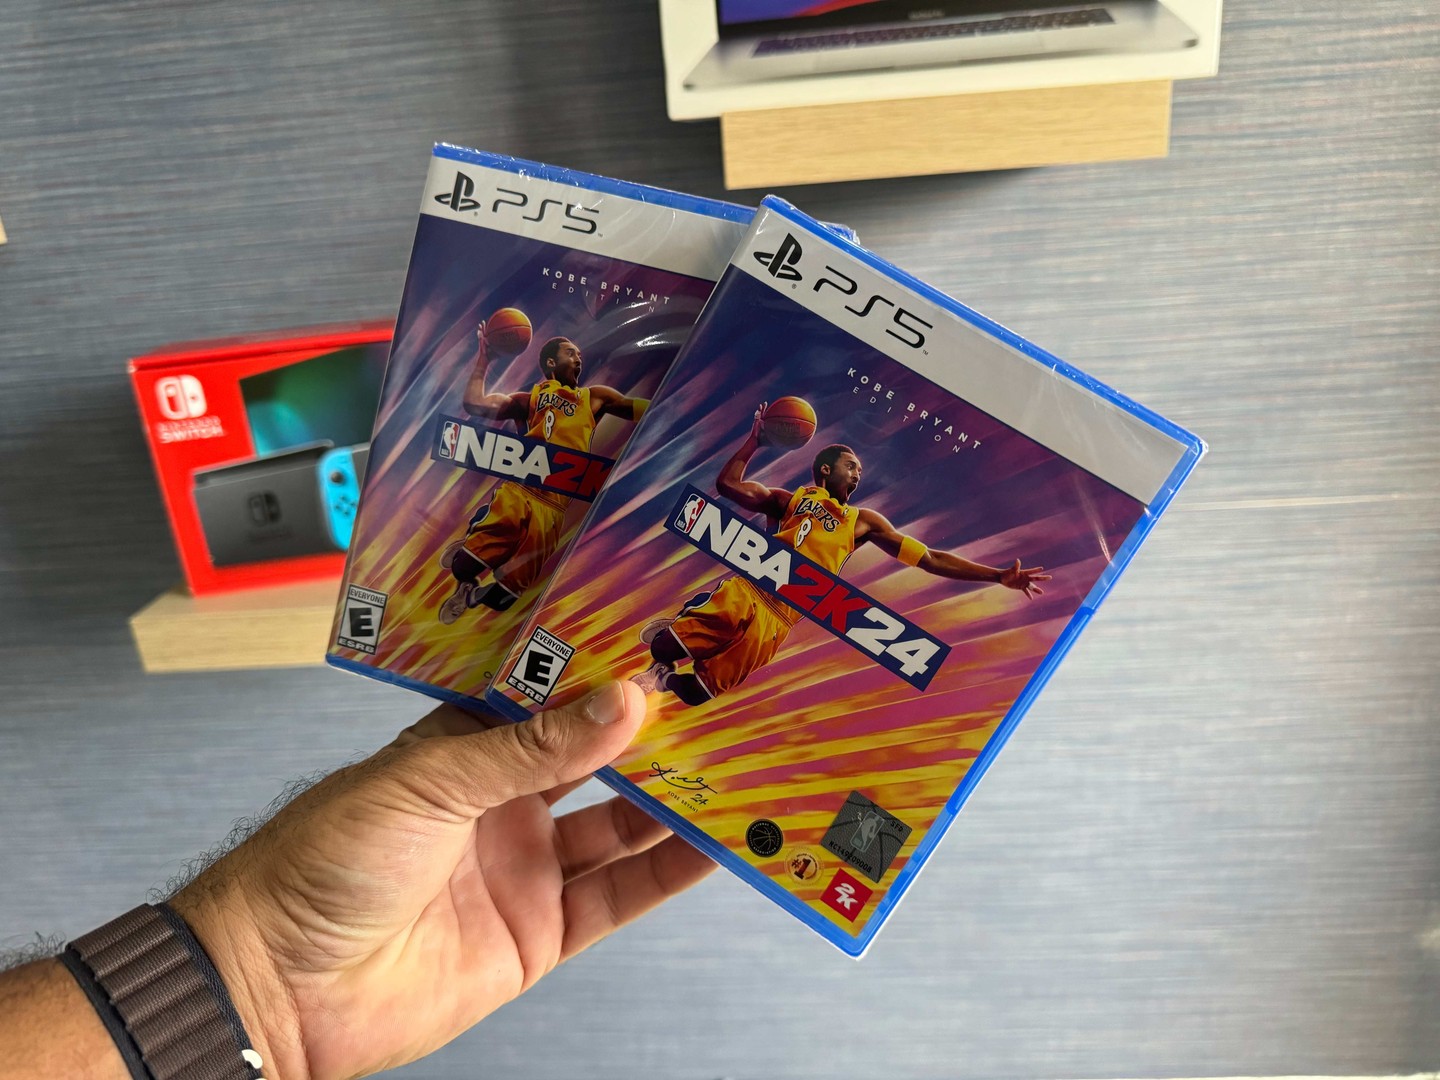 celulares y tabletas - NBA 2K24 KOBY BRYANT EDITION para PS5 Video Juego Nuevos Sellados RD$ 4,50